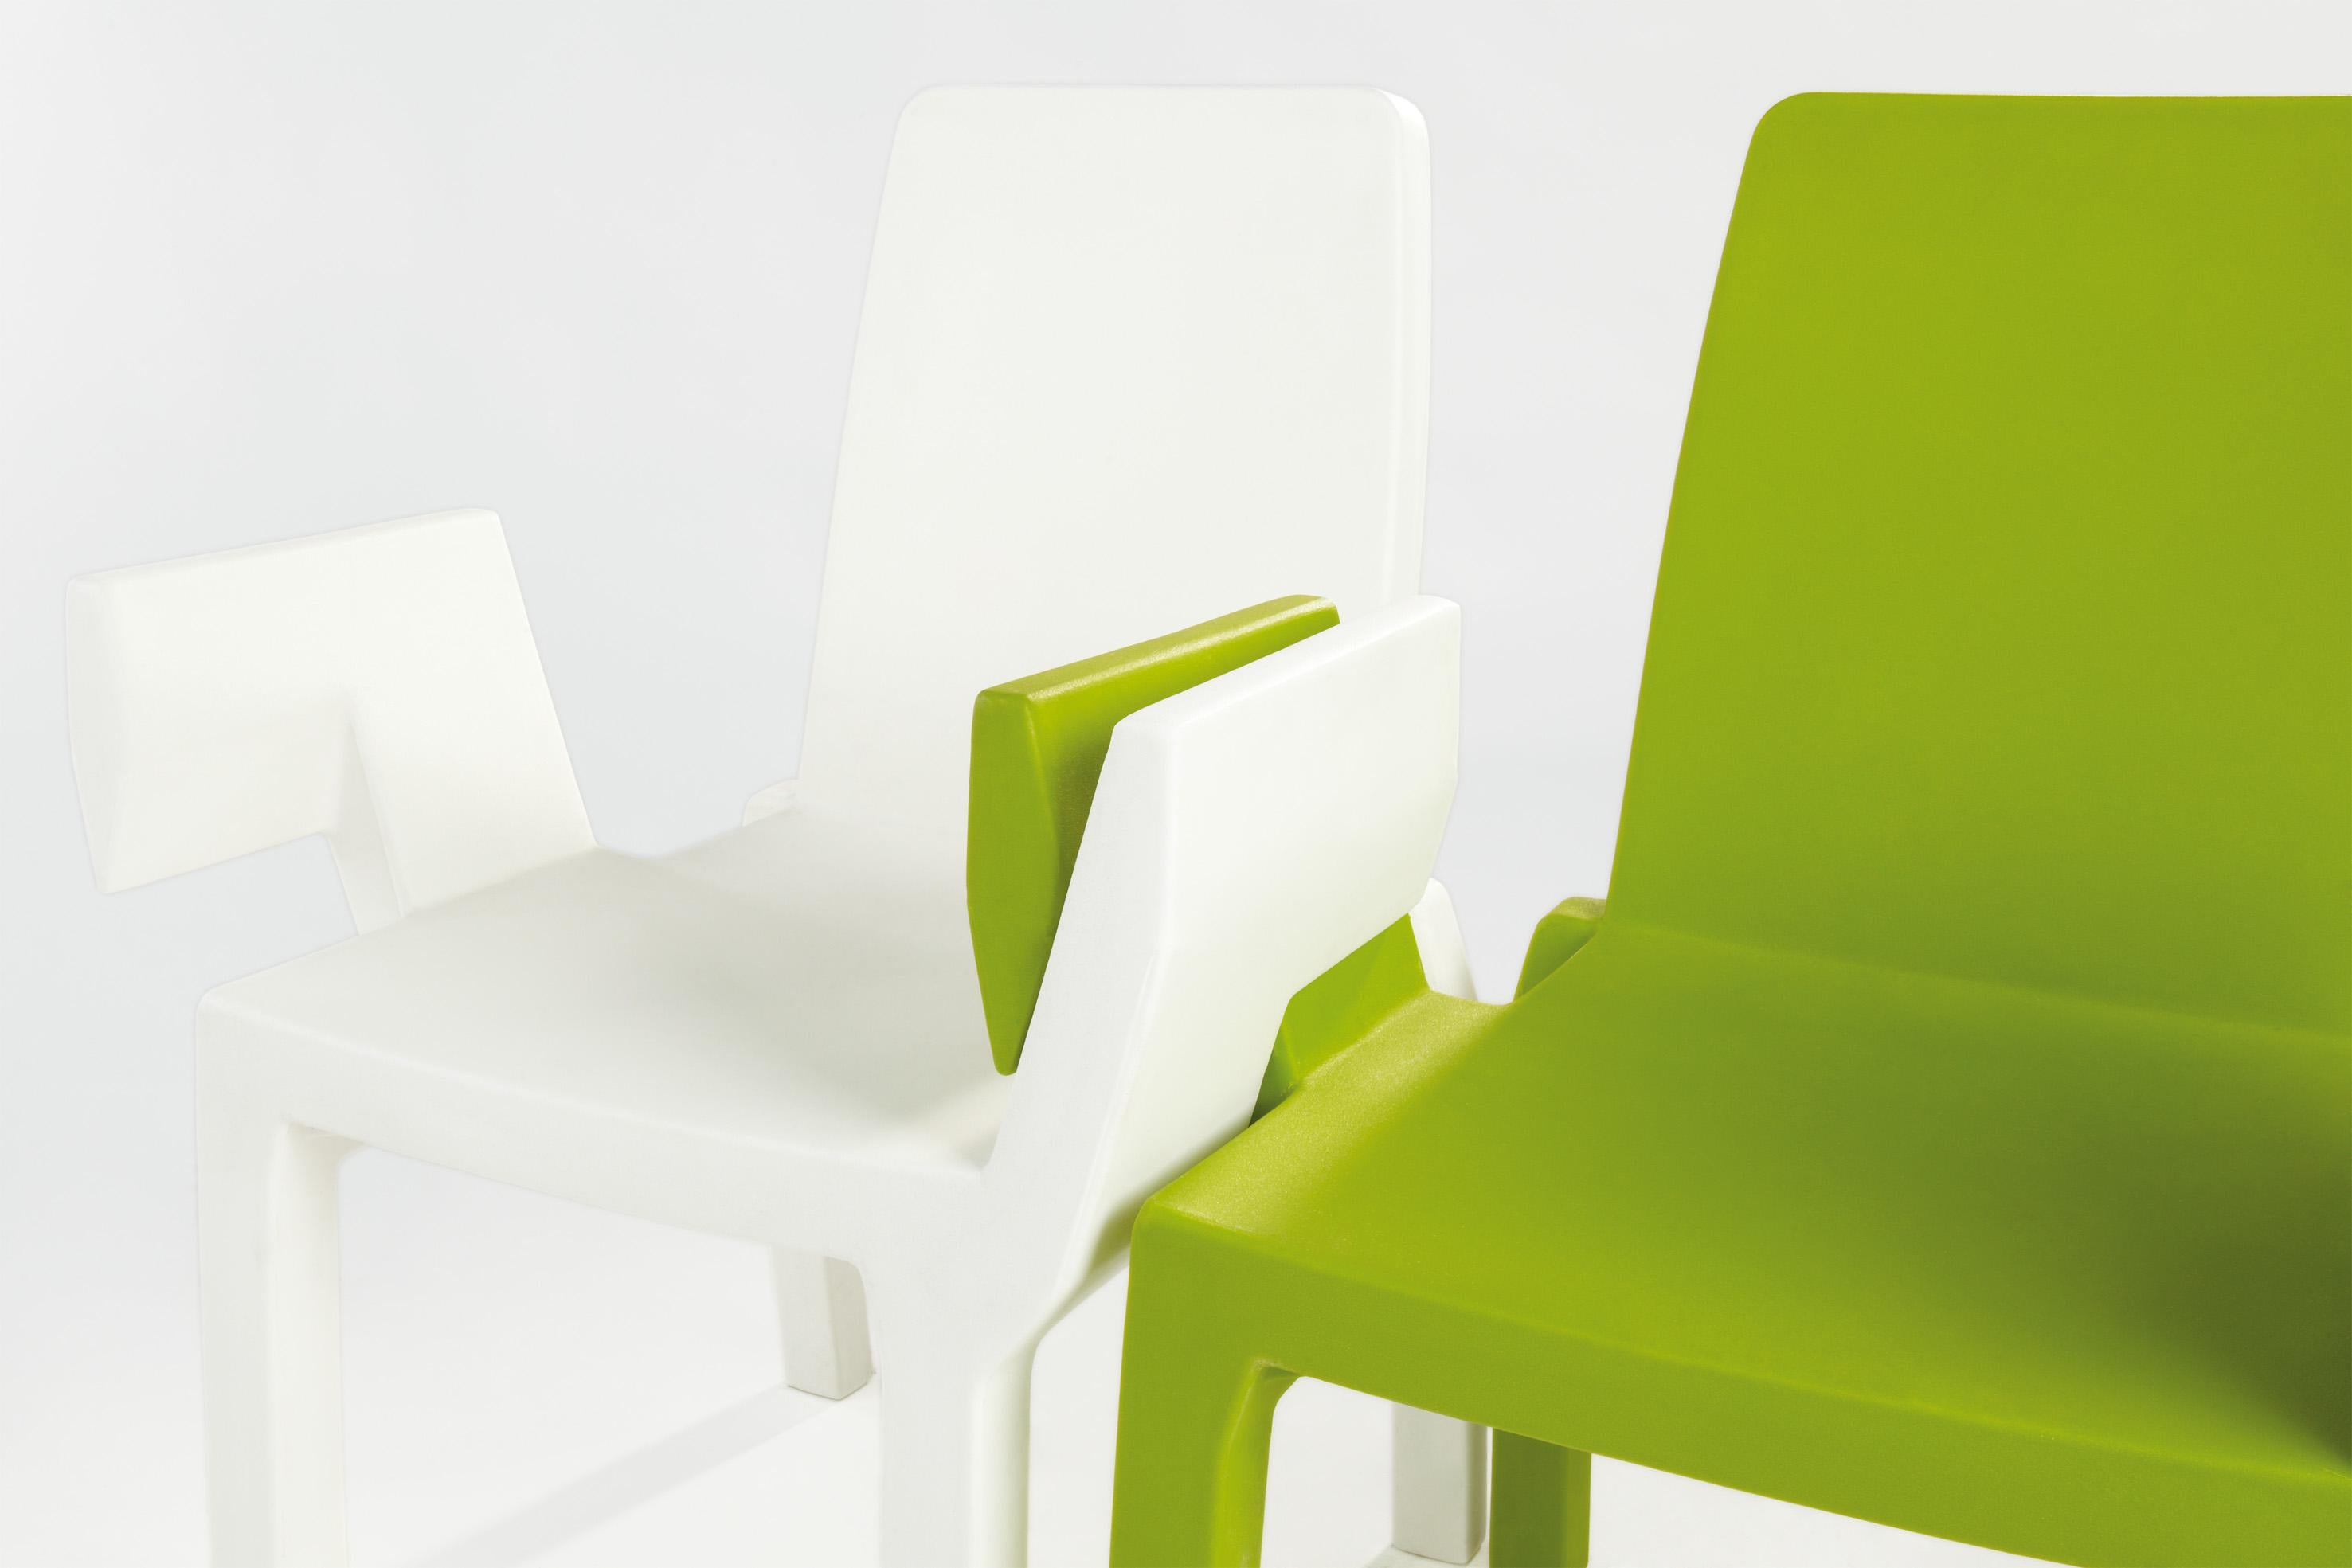 Milky White Doublix Stuhl von Stirum Design
Abmessungen: T 57 x B 61 x H 88 cm. Sitzhöhe: 43 cm.
MATERIALEN: Polyethylen.
Gewicht: 10 kg.

Erhältlich in verschiedenen Farbvarianten. Dieses Produkt ist für die Verwendung im Innen- und Außenbereich